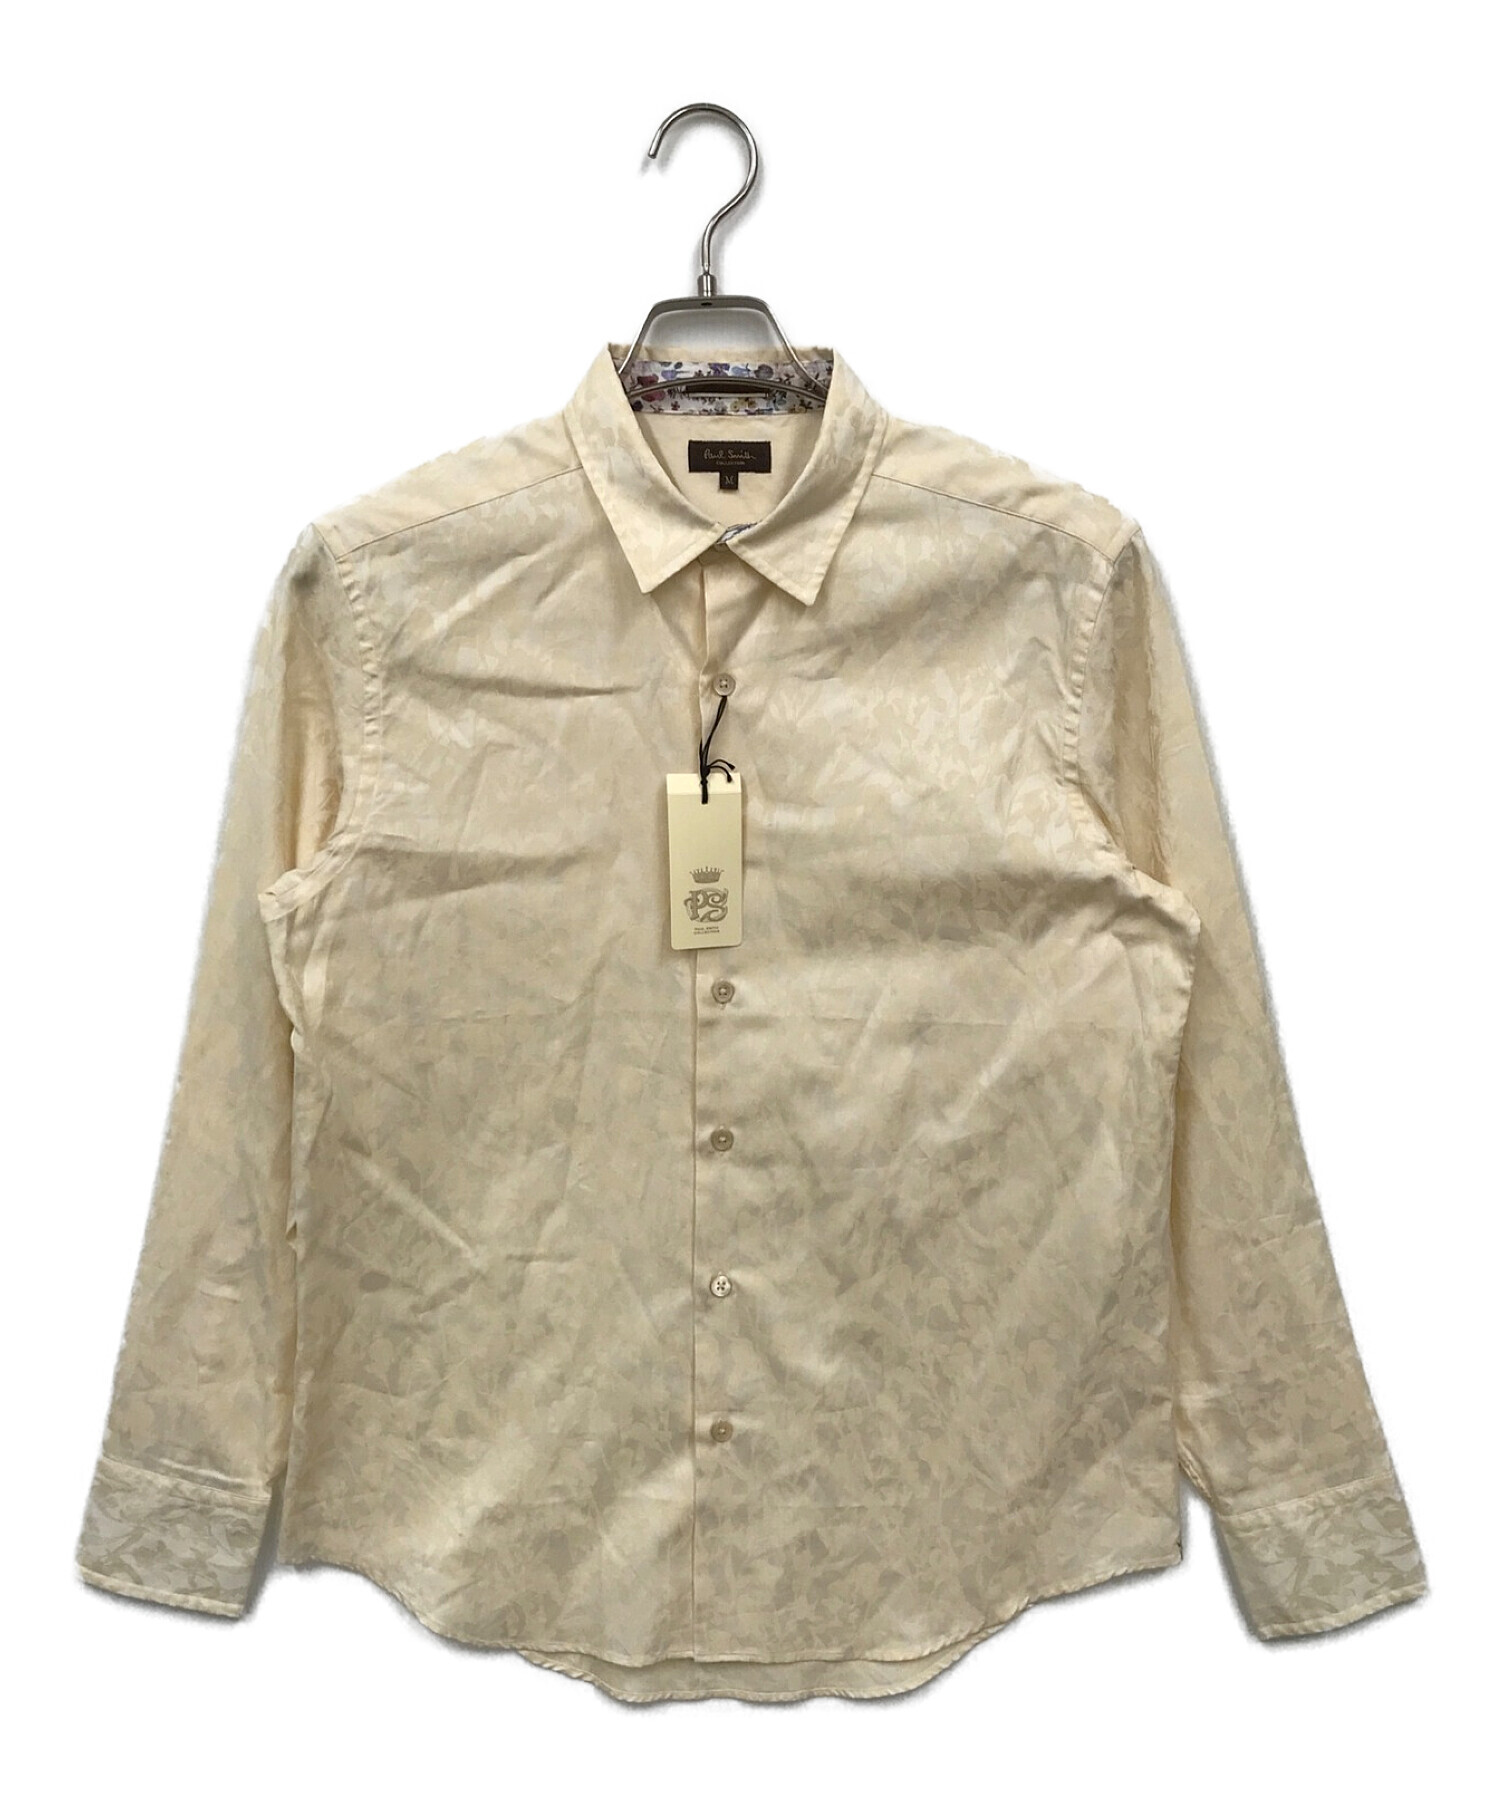 Paul Smith COLLECTION (ポールスミス コレクション) ジャガードデザインシャツ ベージュ サイズ:M 未使用品